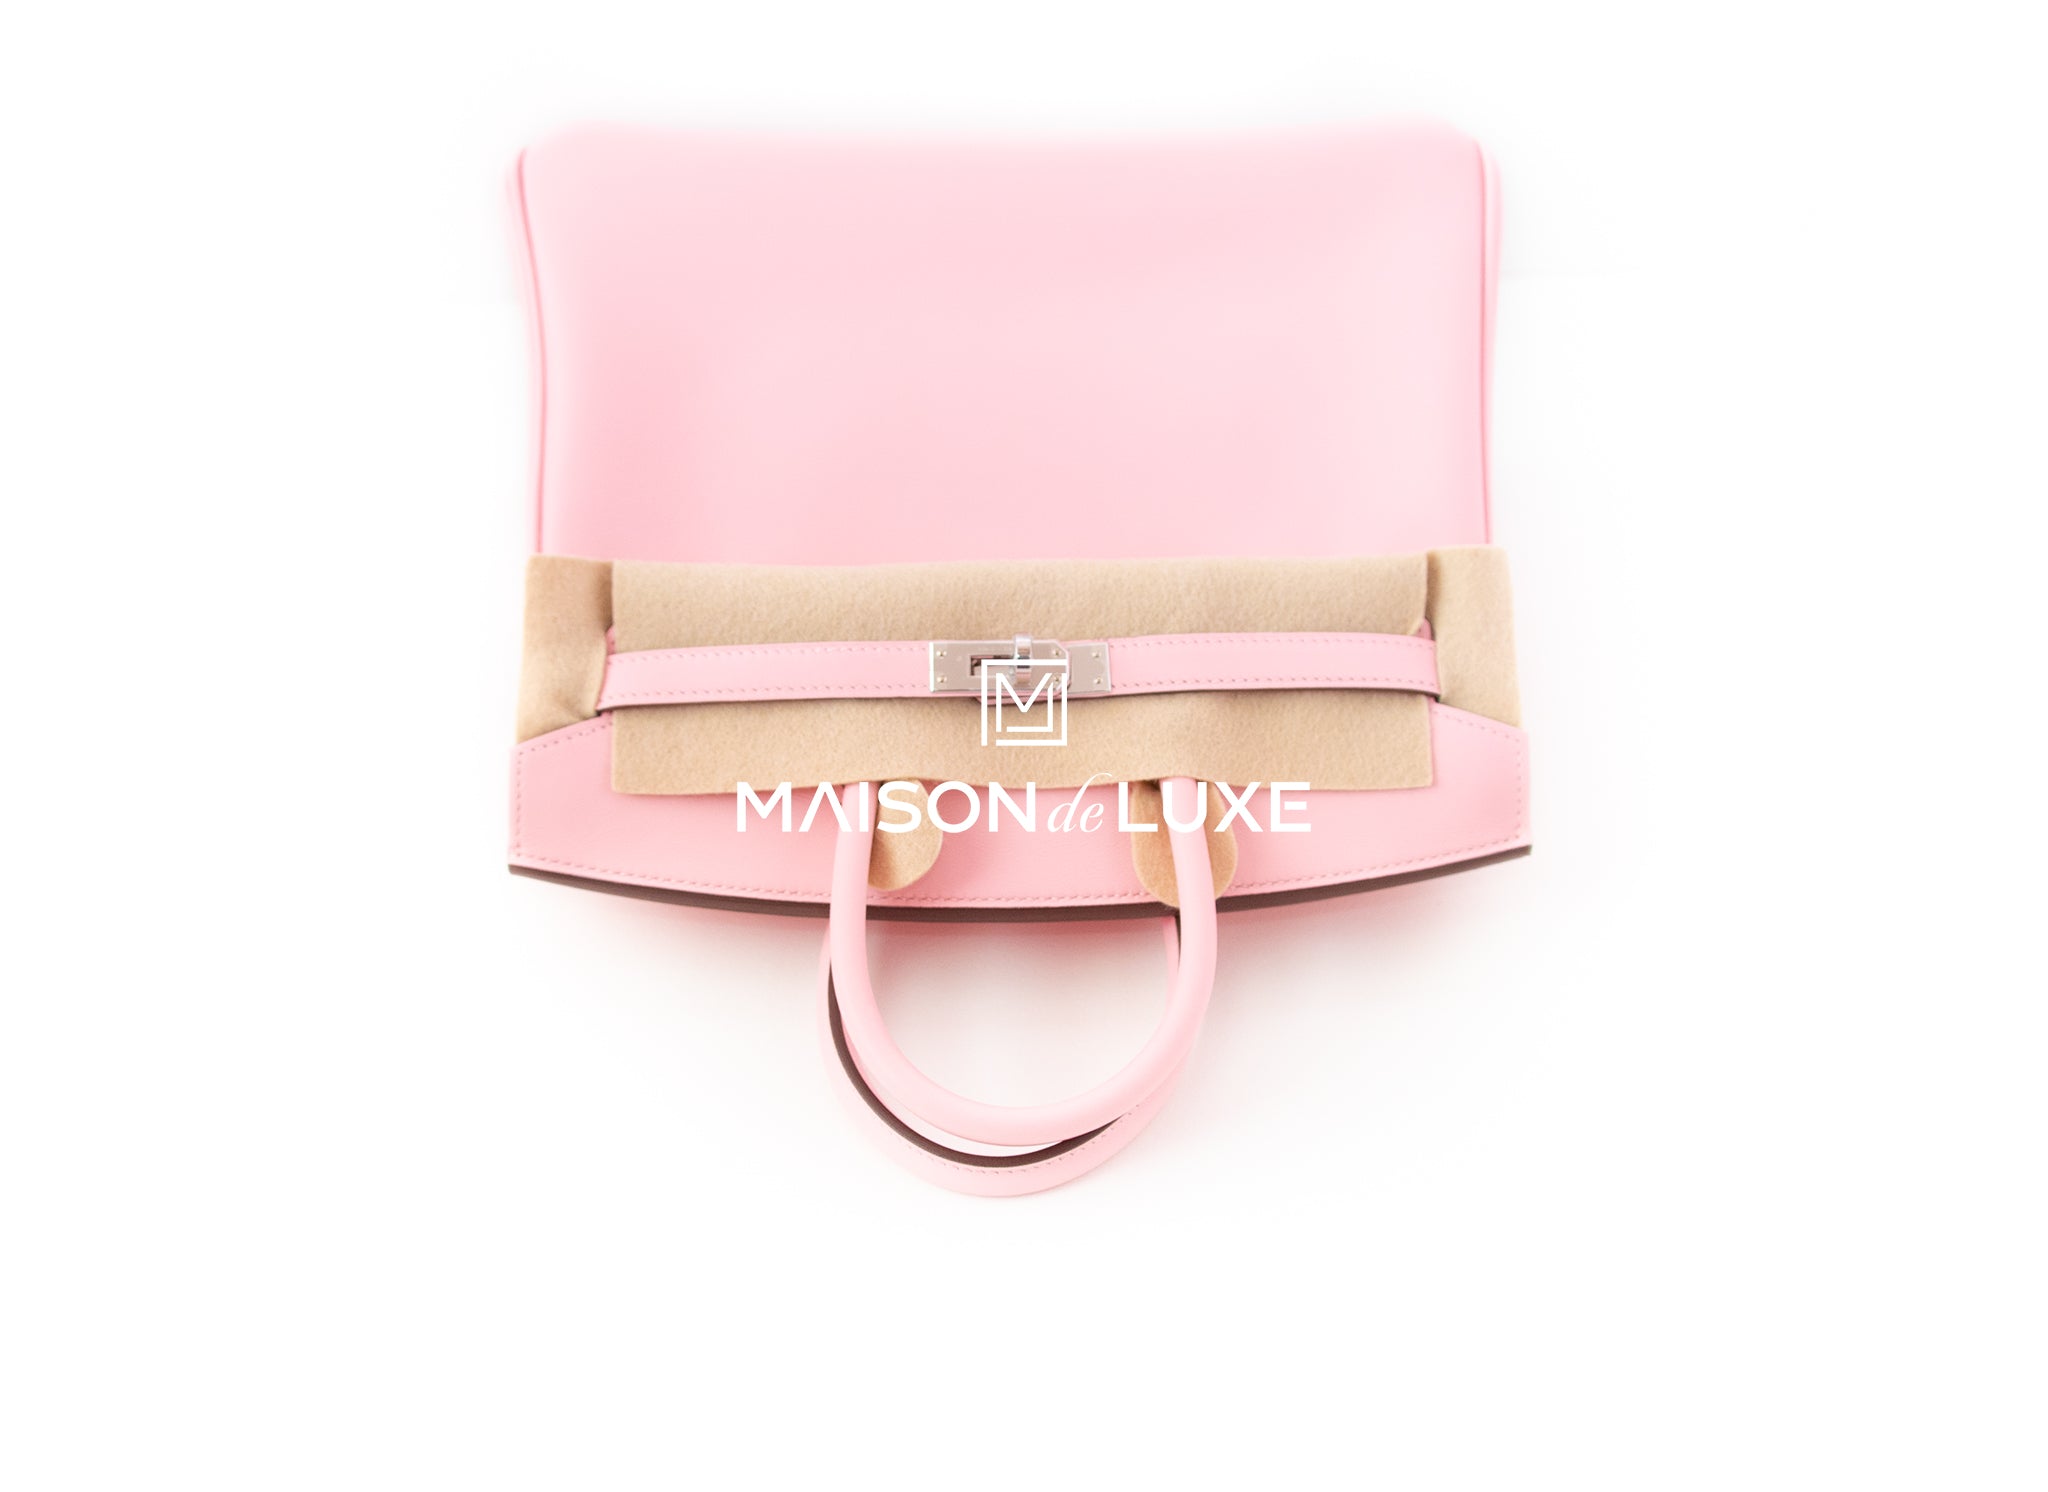 Hermes Swift Gold Hardware Pink Jewel Birkin 25 Rose Sakura Bag at